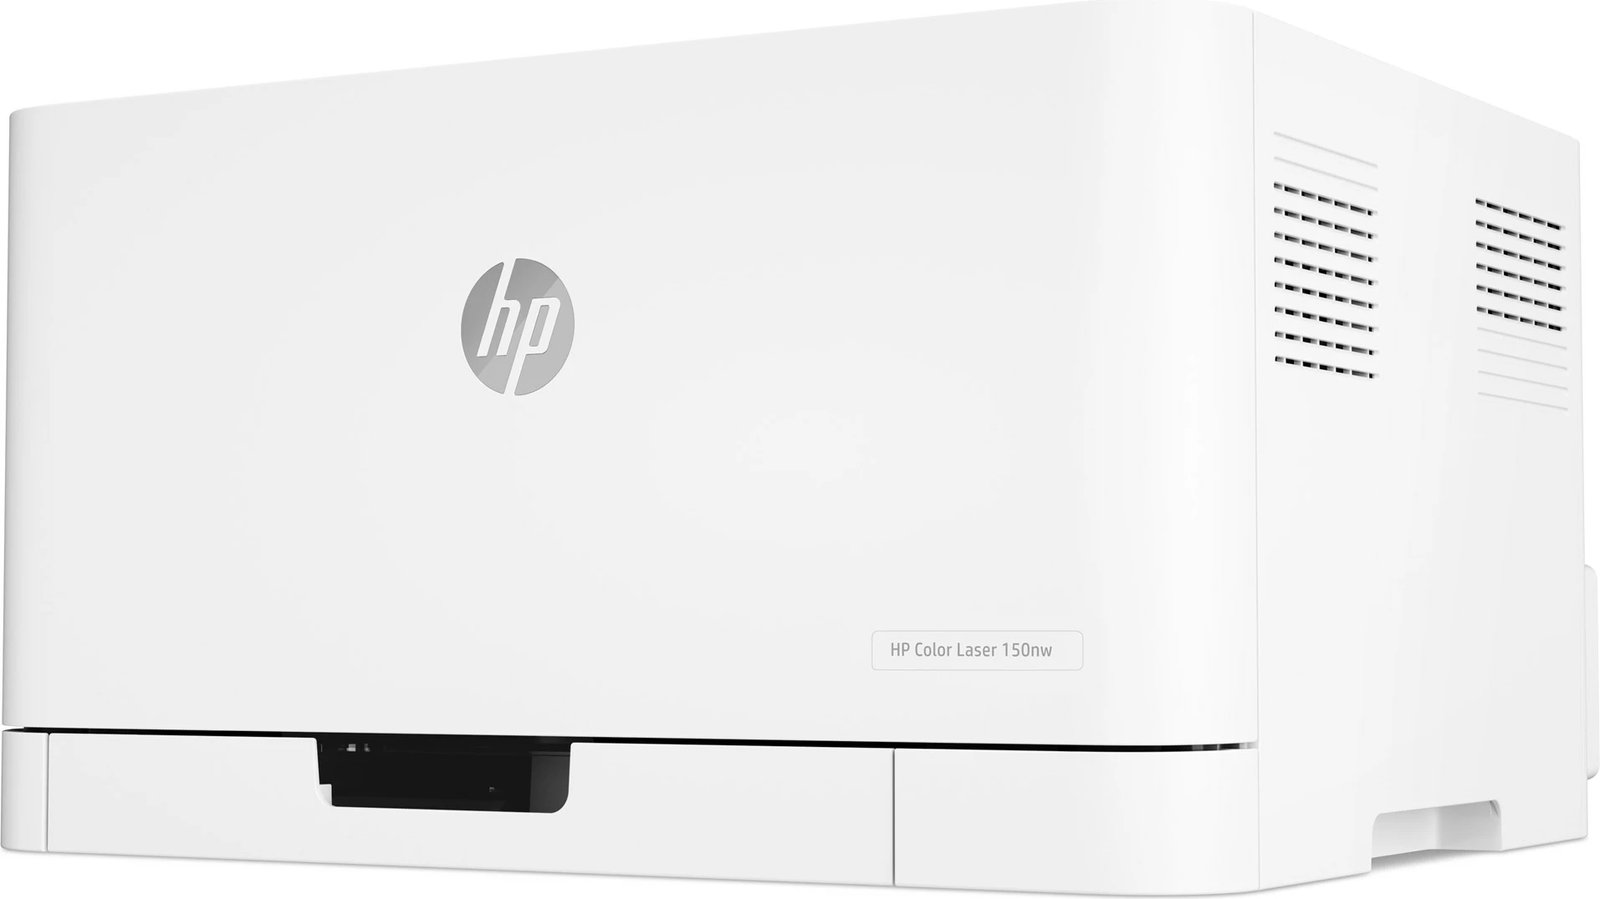 Printer HP Color Laser 150nw, i bardhë  